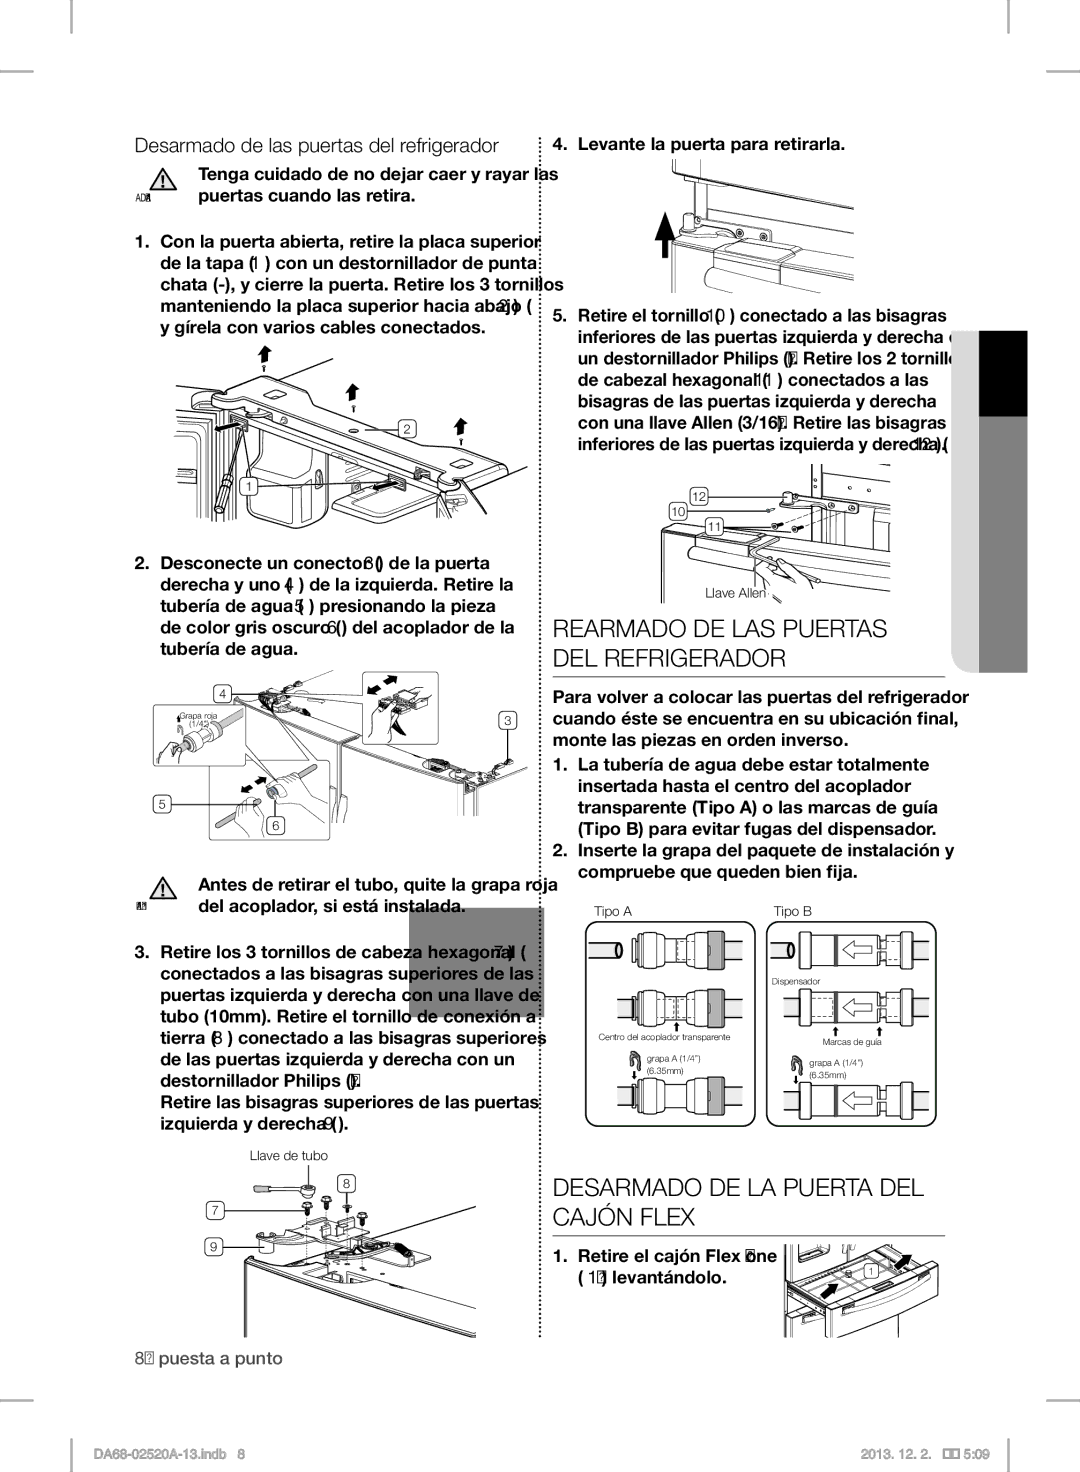 Samsung RF4289HAR user manual Rearmado DE LAS Puertas DEL Refrigerador, Desarmado DE LA Puerta DEL Cajón Flex 